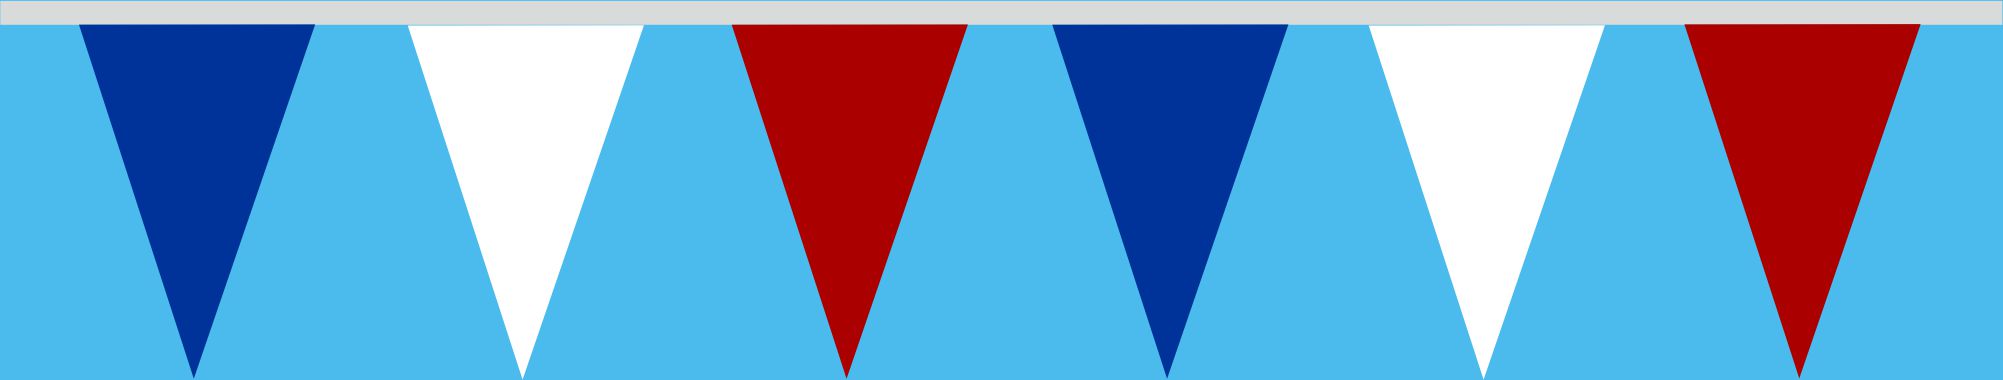 Wimpelkette blau-weiss-rot 20x30